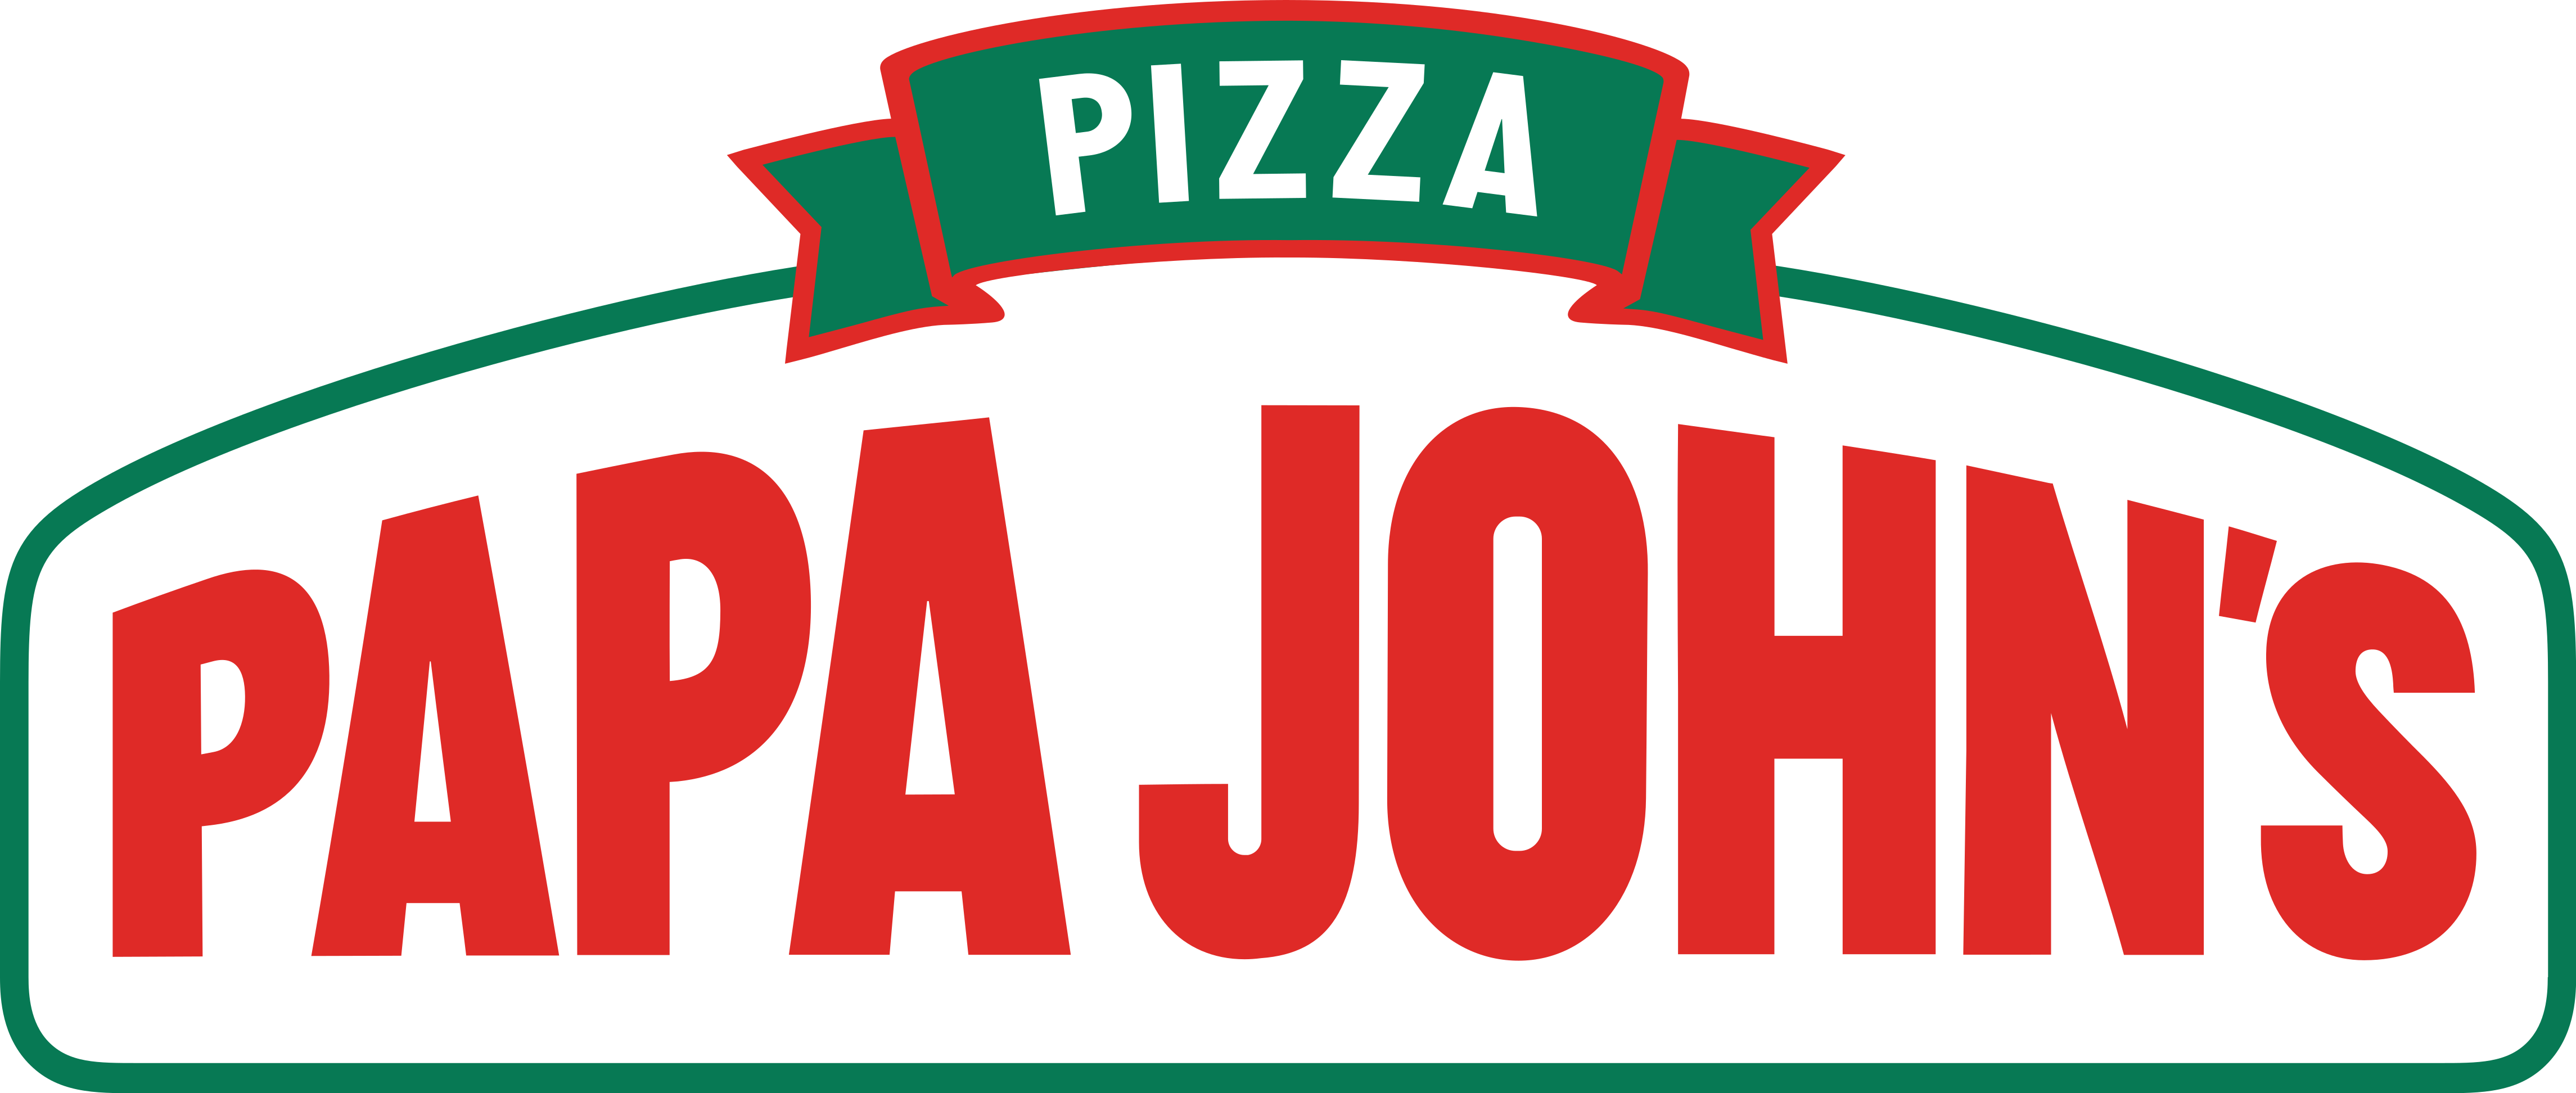 PAPA JOHN'S PIZZA